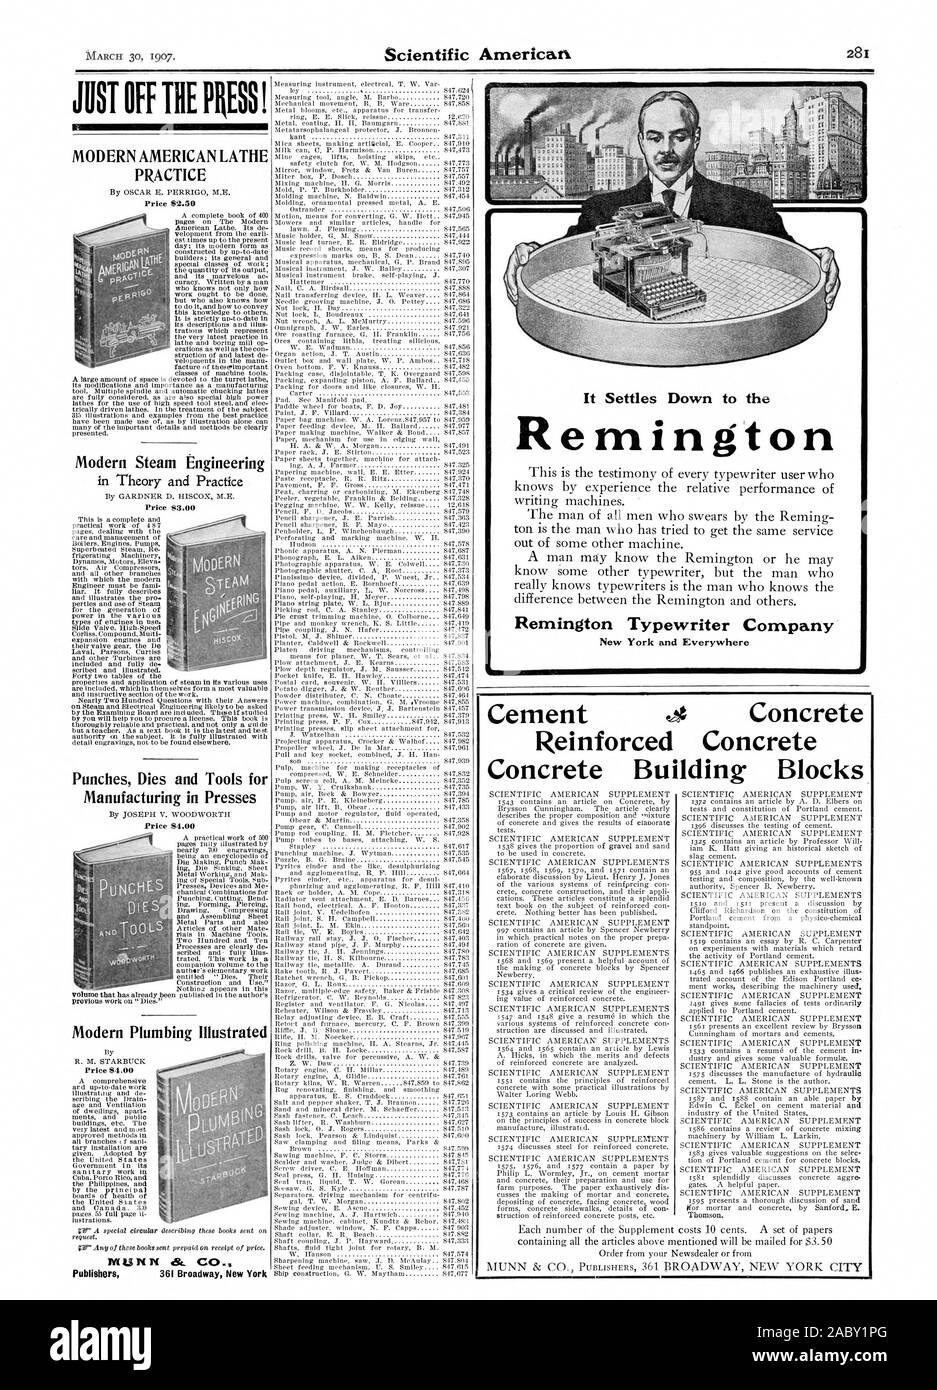 Es senkt sich auf den Remington Remington Typewriter Company New York und überall NUR AUS DER PRESSE! Moderne amerikanische DREHMASCHINE PRAXIS modernen Dampftechnik Schläge stirbt und Werkzeuge für die Fertigung in Pressen moderne Sanitär illustrierte Zement e Beton Beton Beton Bausteine, Scientific American, 1907-03-30 Stockfoto